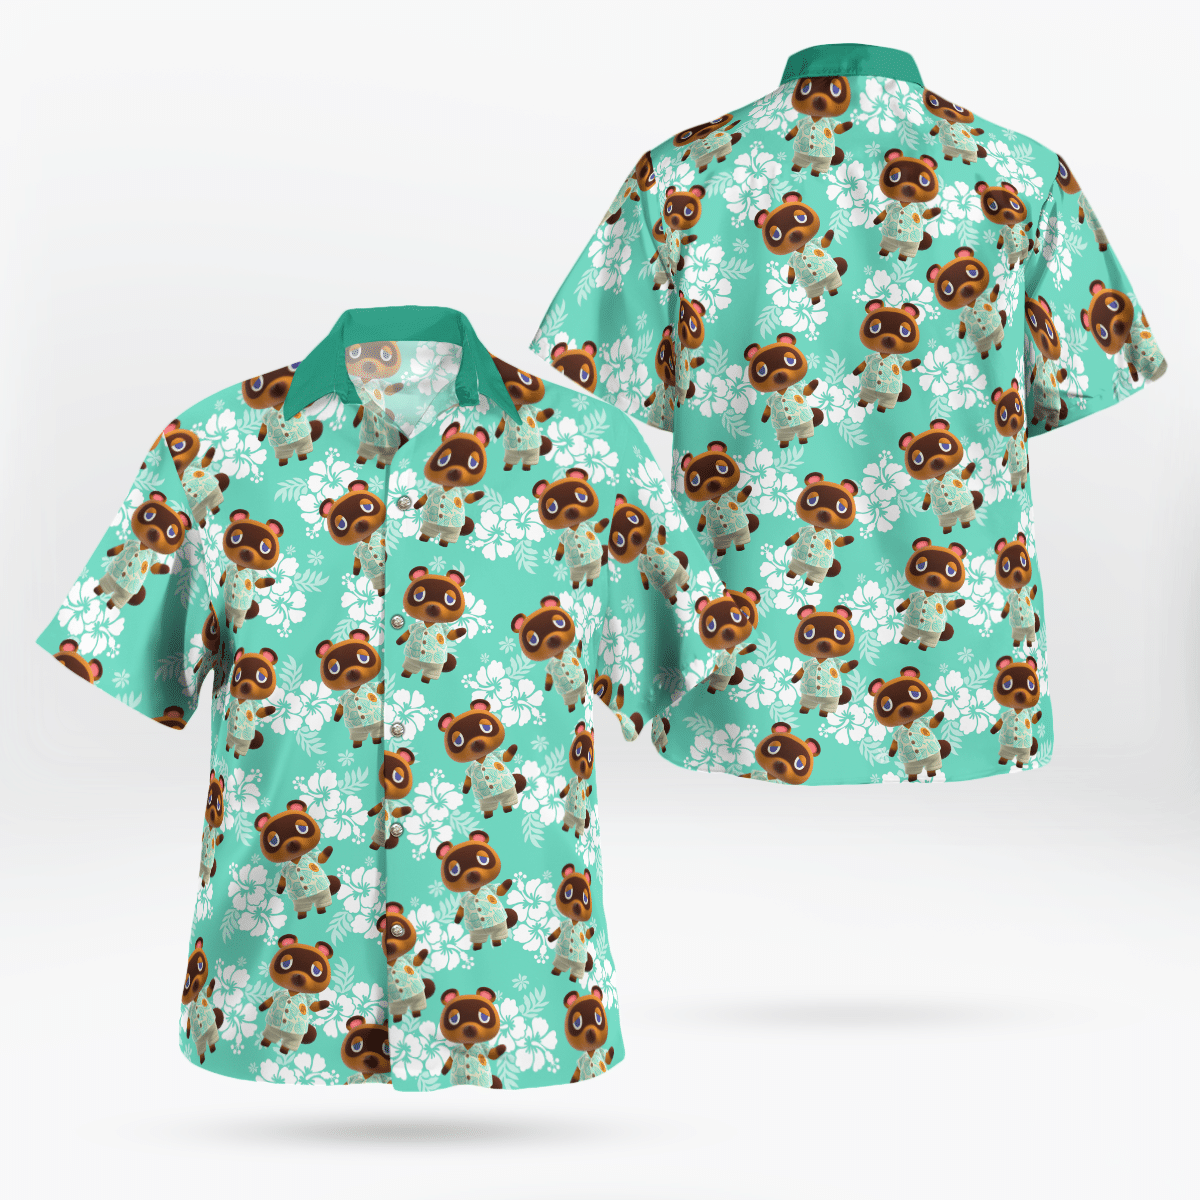 Tom Nook Hawaiian shirt – LIMITED EDITION